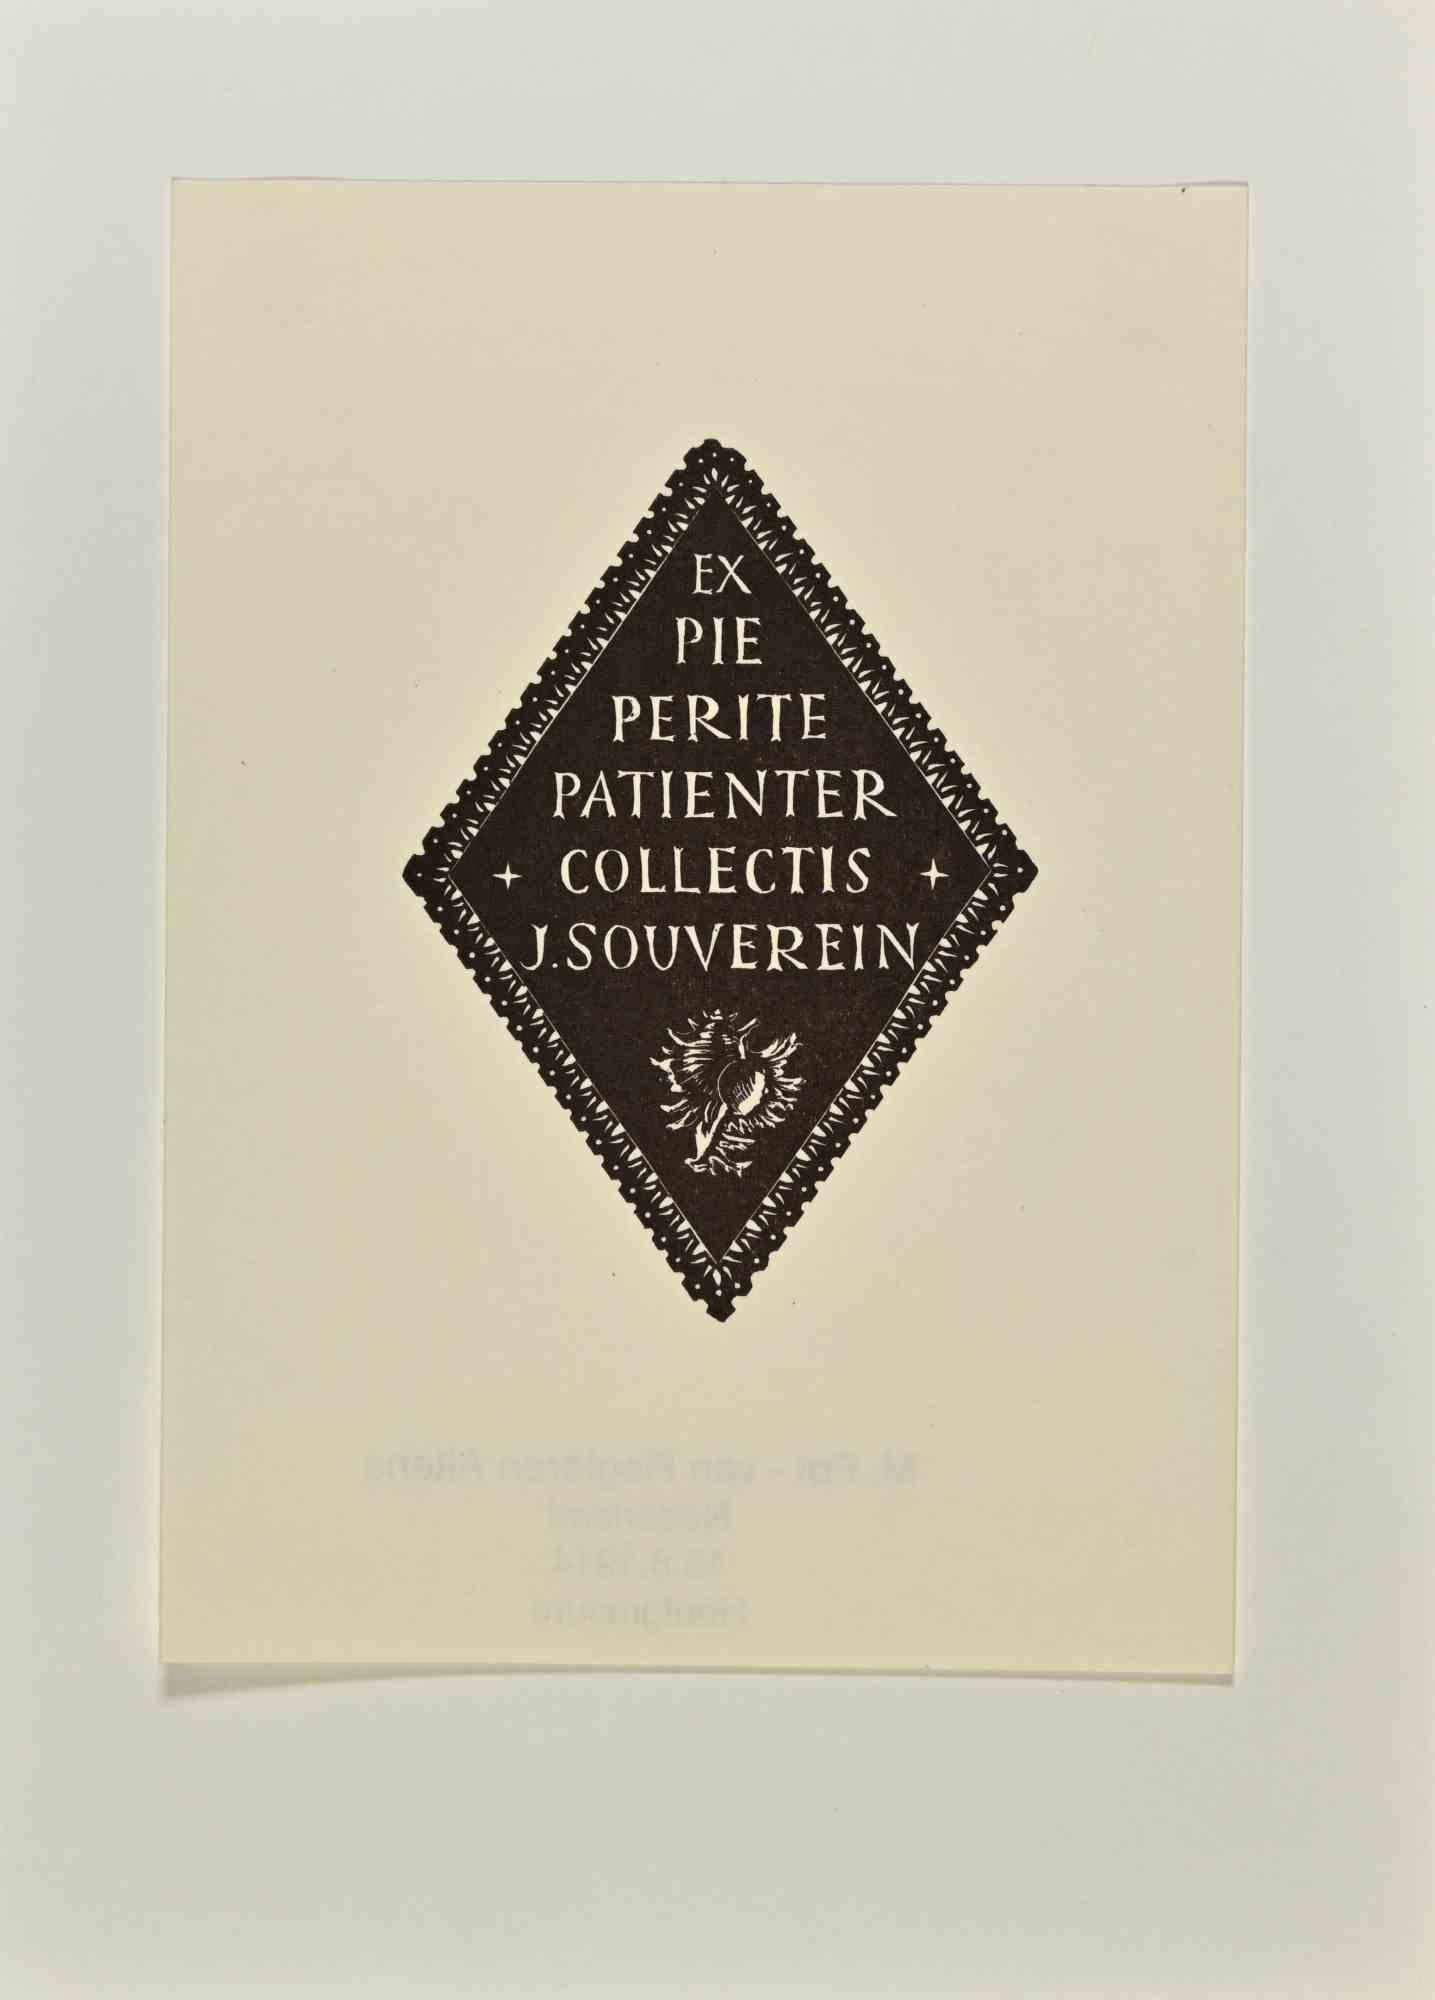 Ex Libris  - Pie Perite Patienter Collectis J. Souverein ist ein modernes Kunstwerk aus dem Jahr 1914 von M. Pot Van Regteren Altena aus den Niederlanden.

S/W Holzschnitt auf Elfenbeinpapier. Signiert auf der Platte und datiert auf der